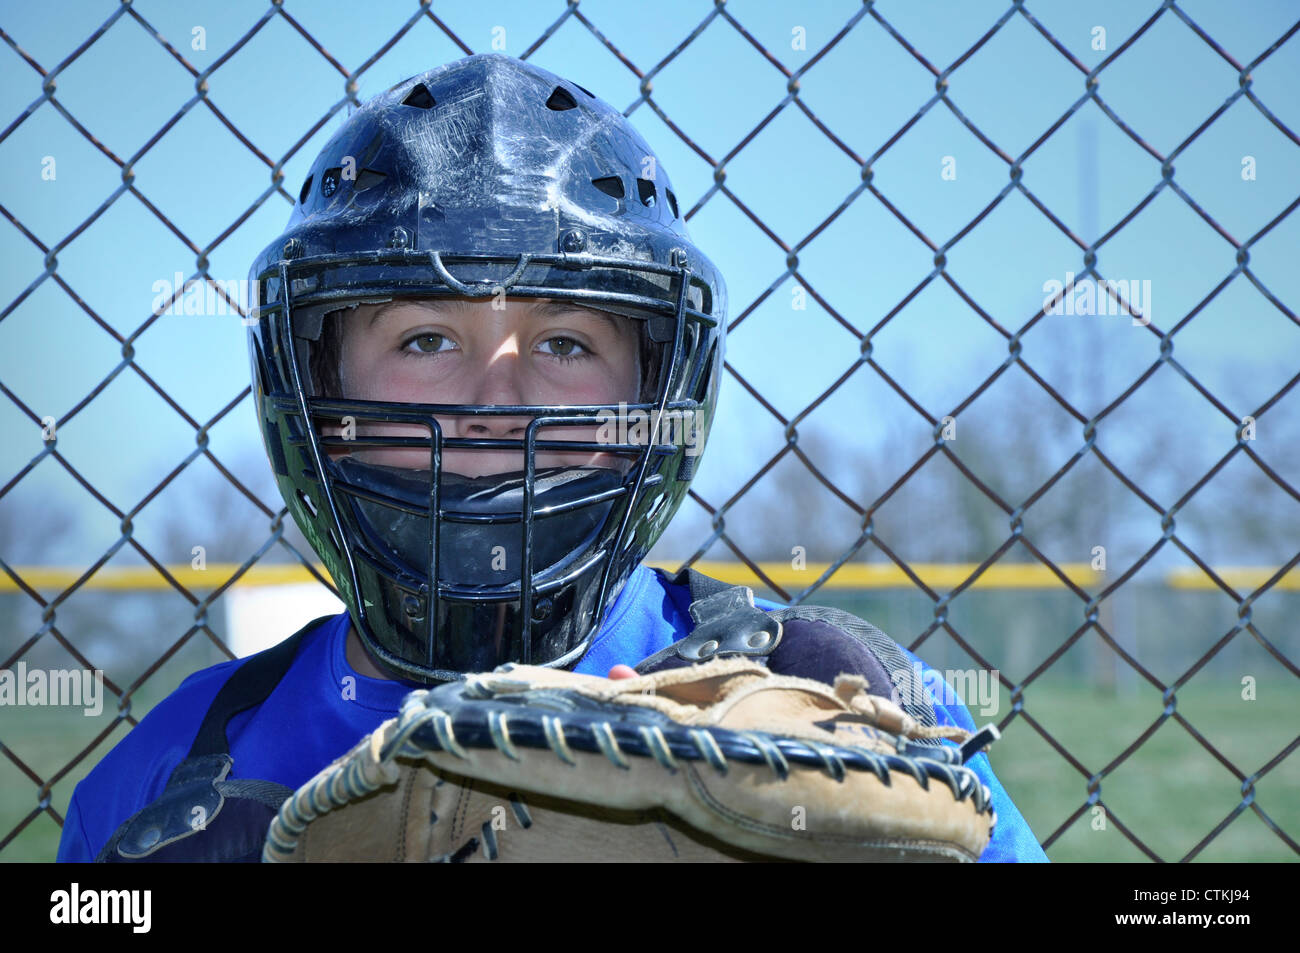 Nahaufnahme Foto von einem jungen Baseball-Catcher tragen Maske und chestguard Stockfoto